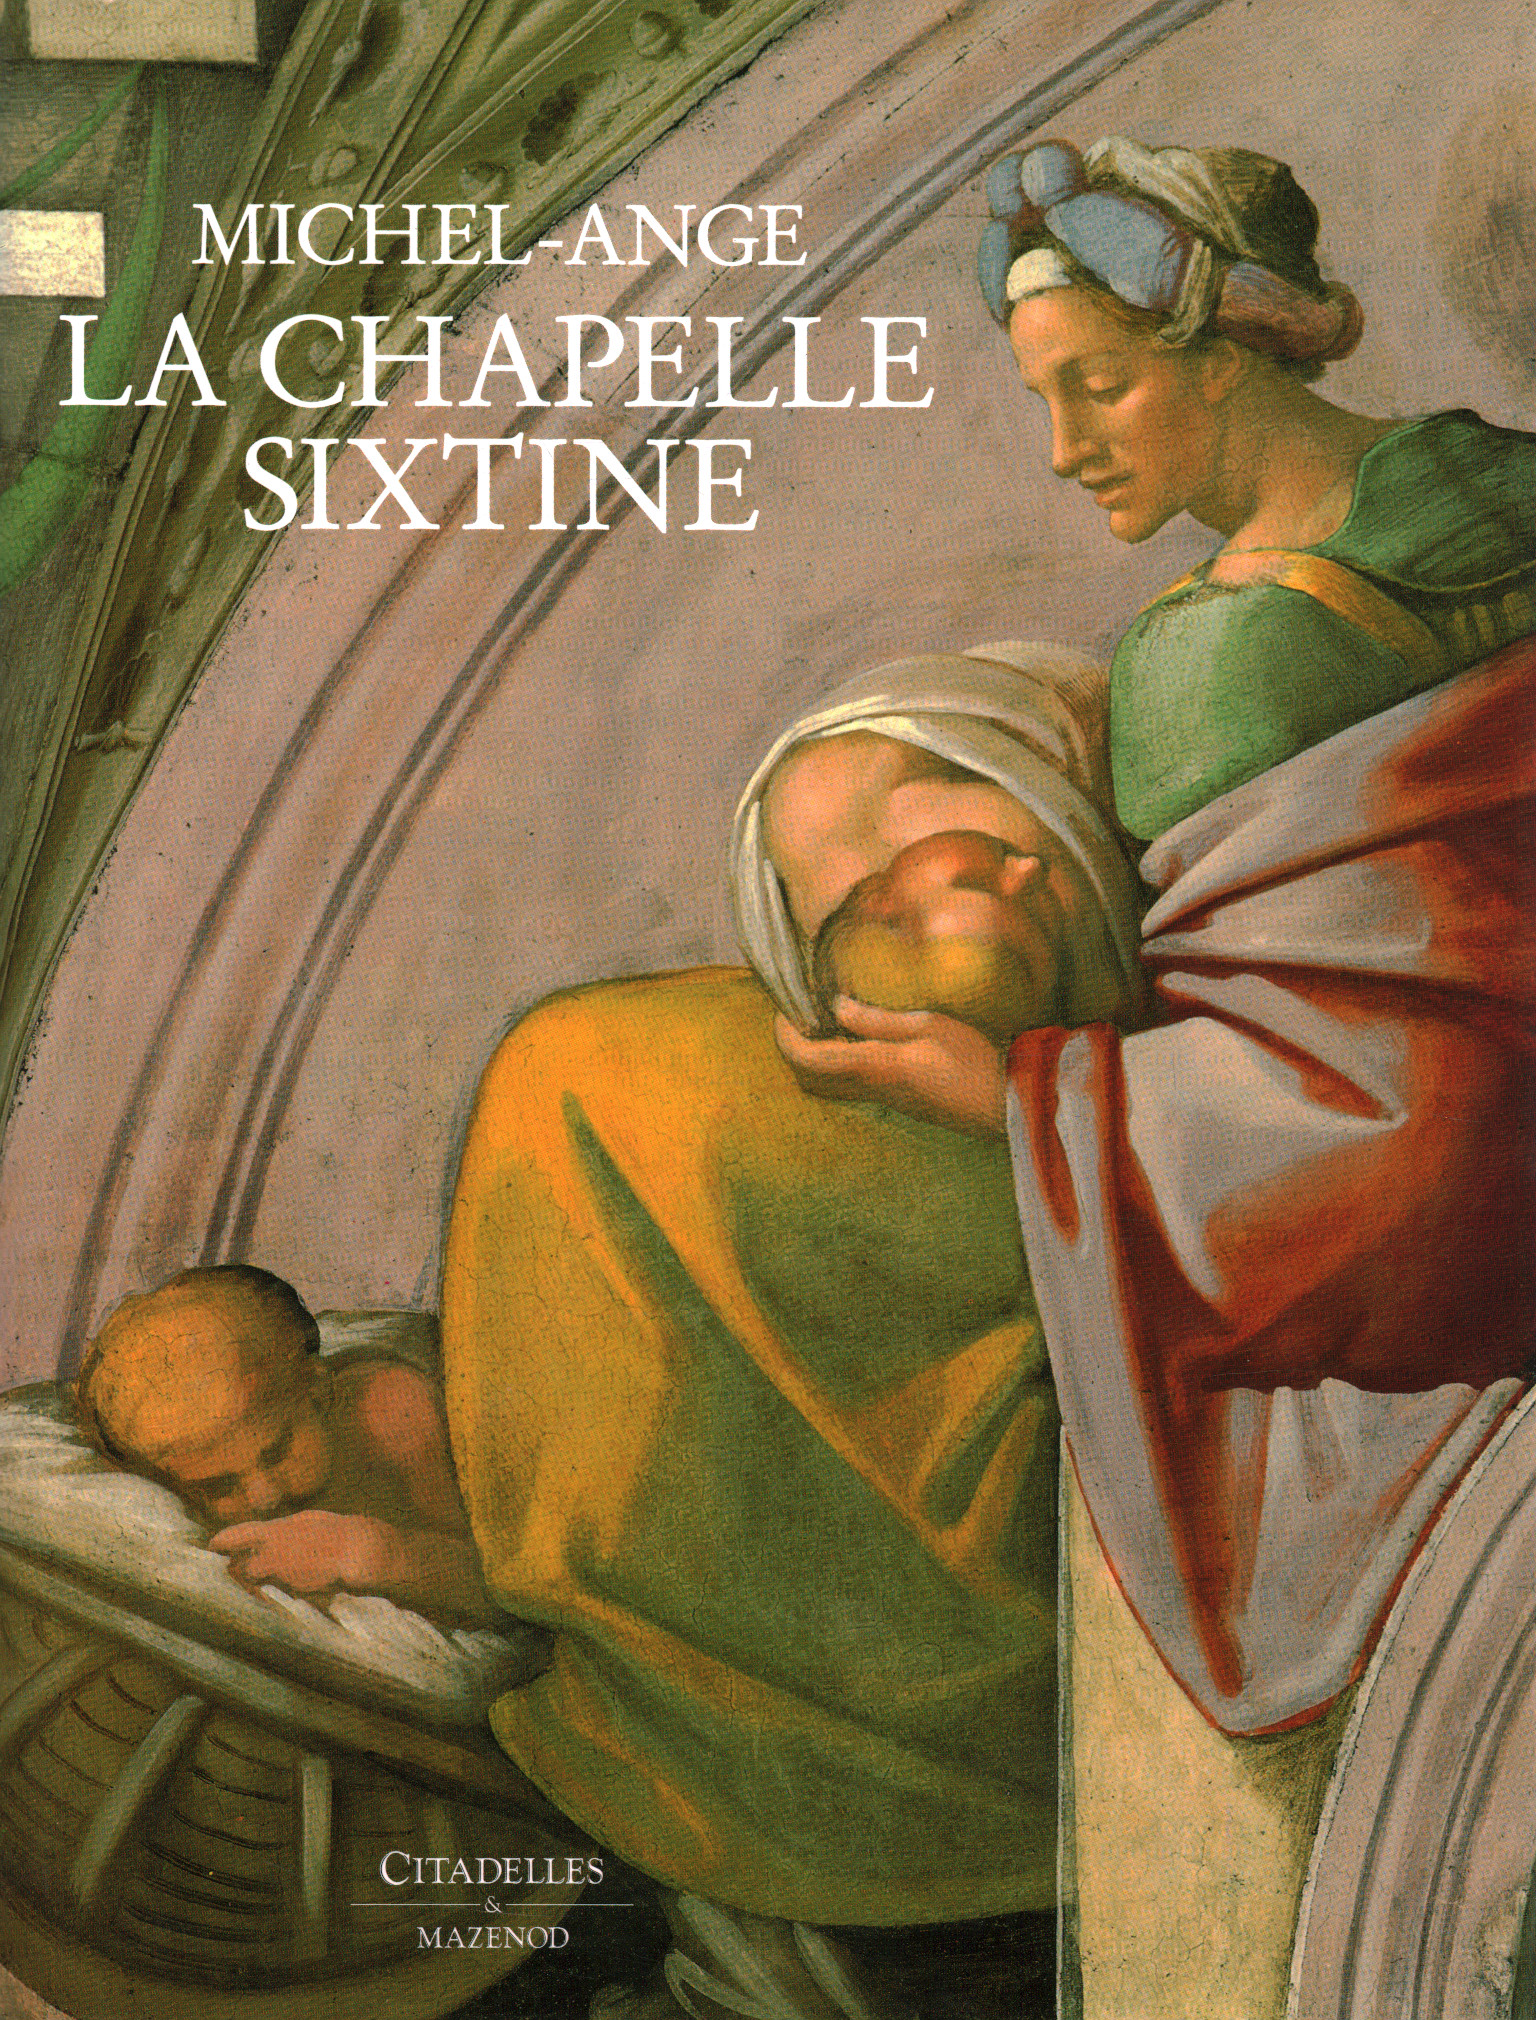 Michel-Ange. The Sixtine Chapel